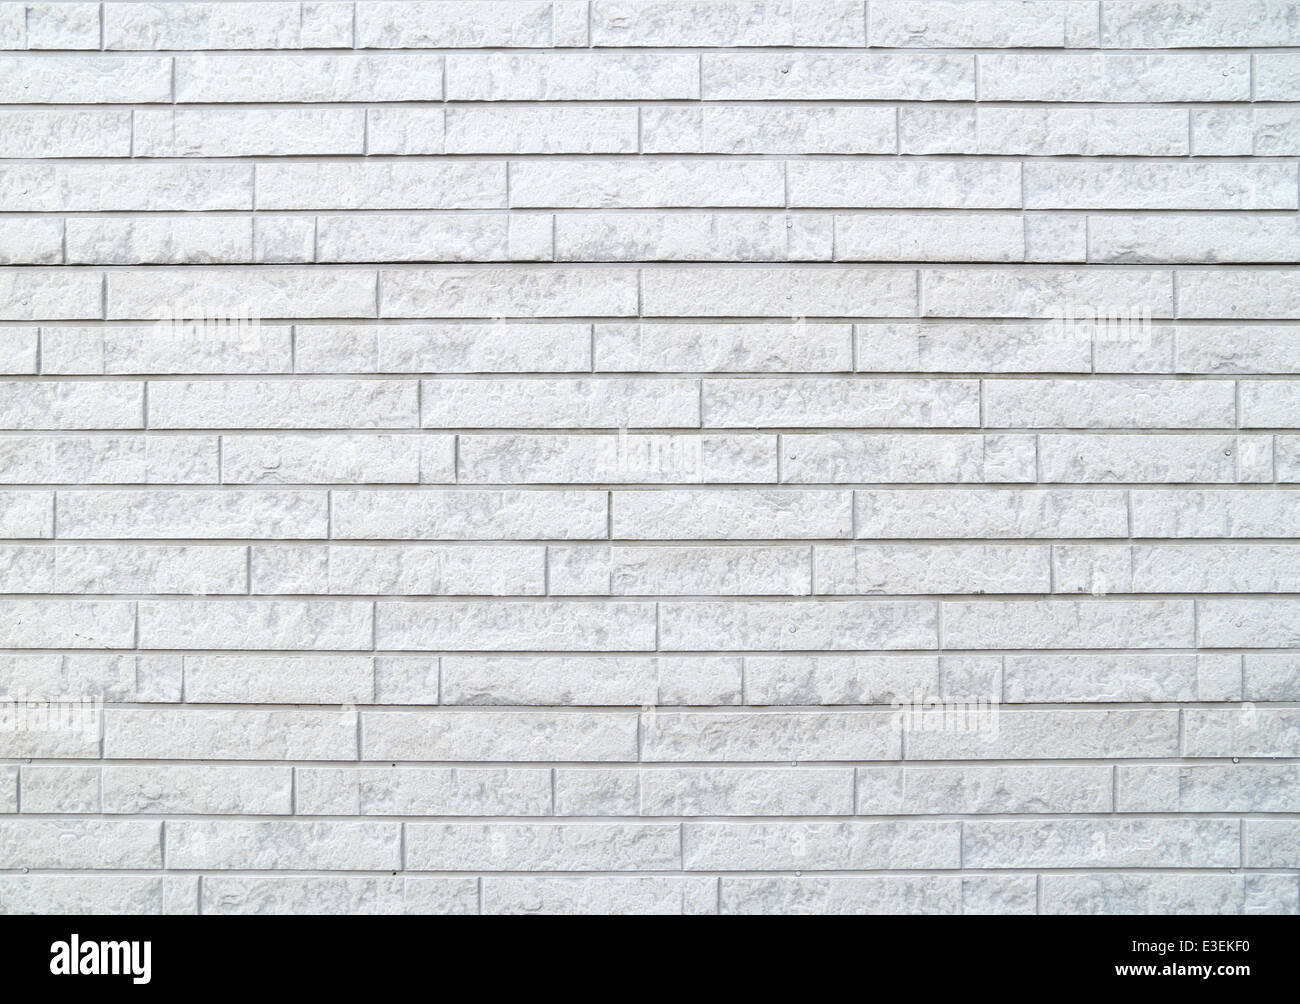 Textura de piedra blanca imagen de archivo. Imagen de contexto - 53518579